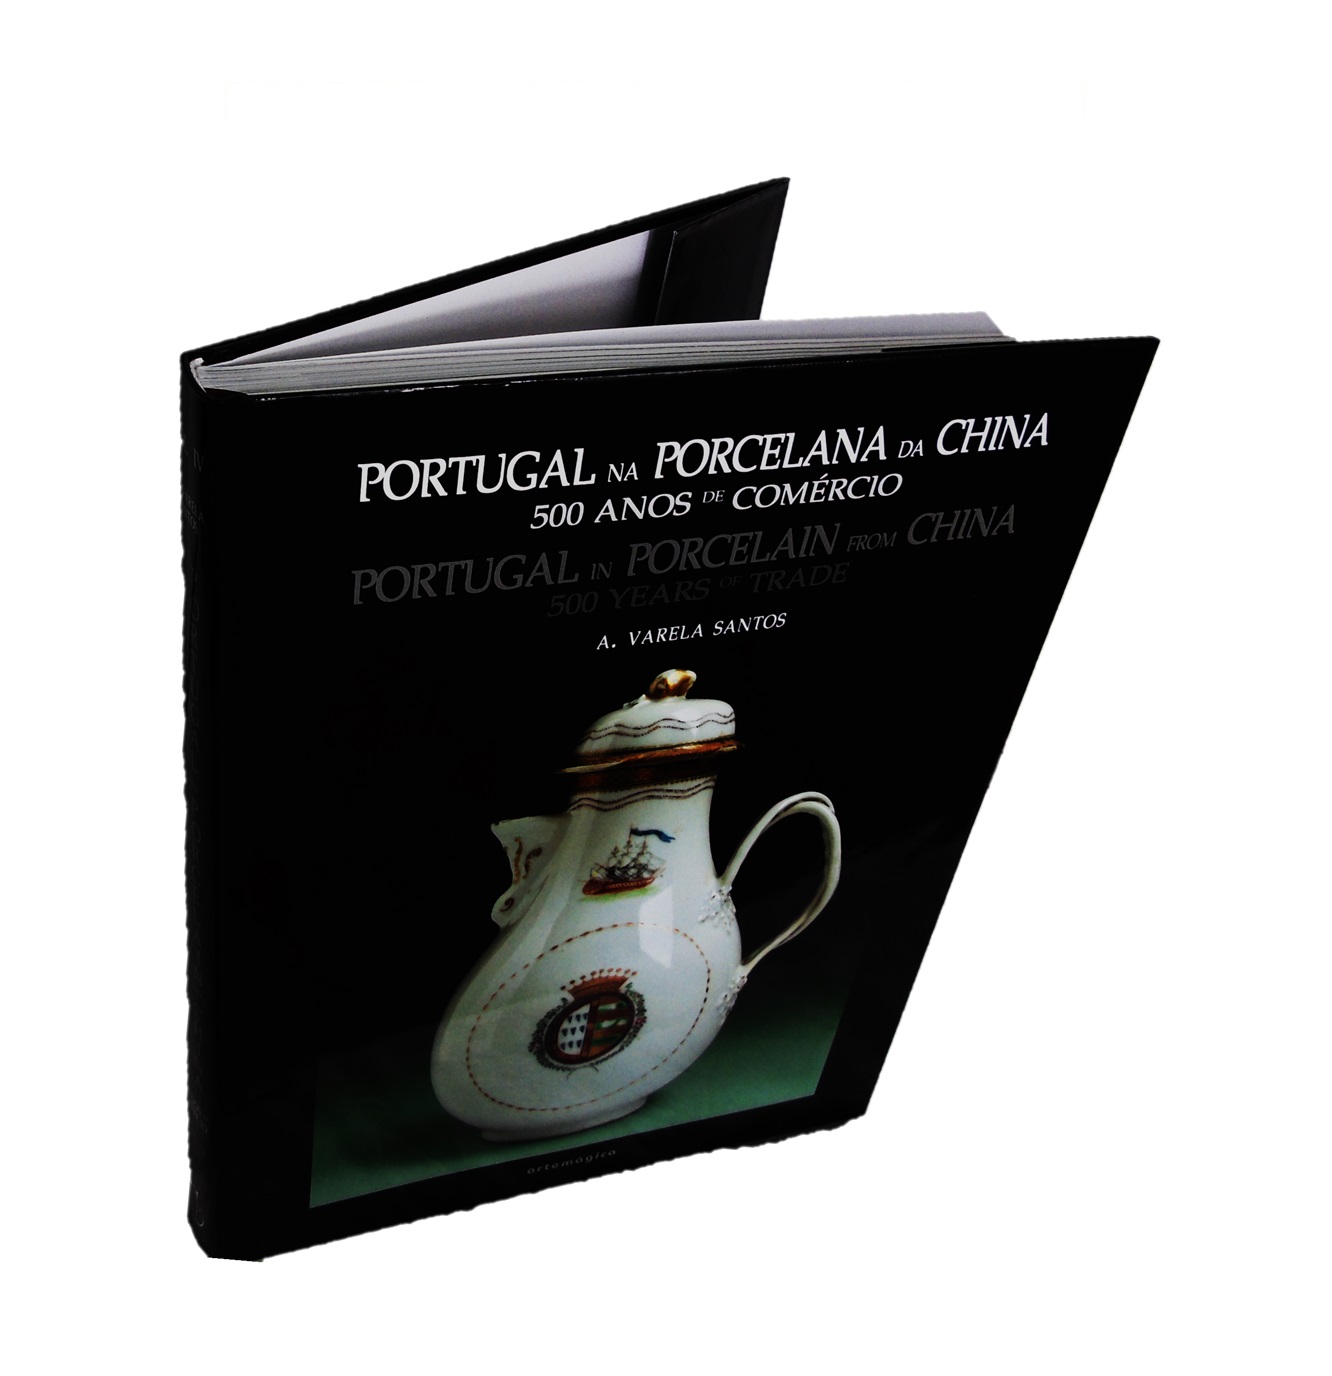 Portugal na Porcelana da China:   Encomendas aristocracia civil portuguesa dos meados do século XVIII a 1800 (Vol. IV)